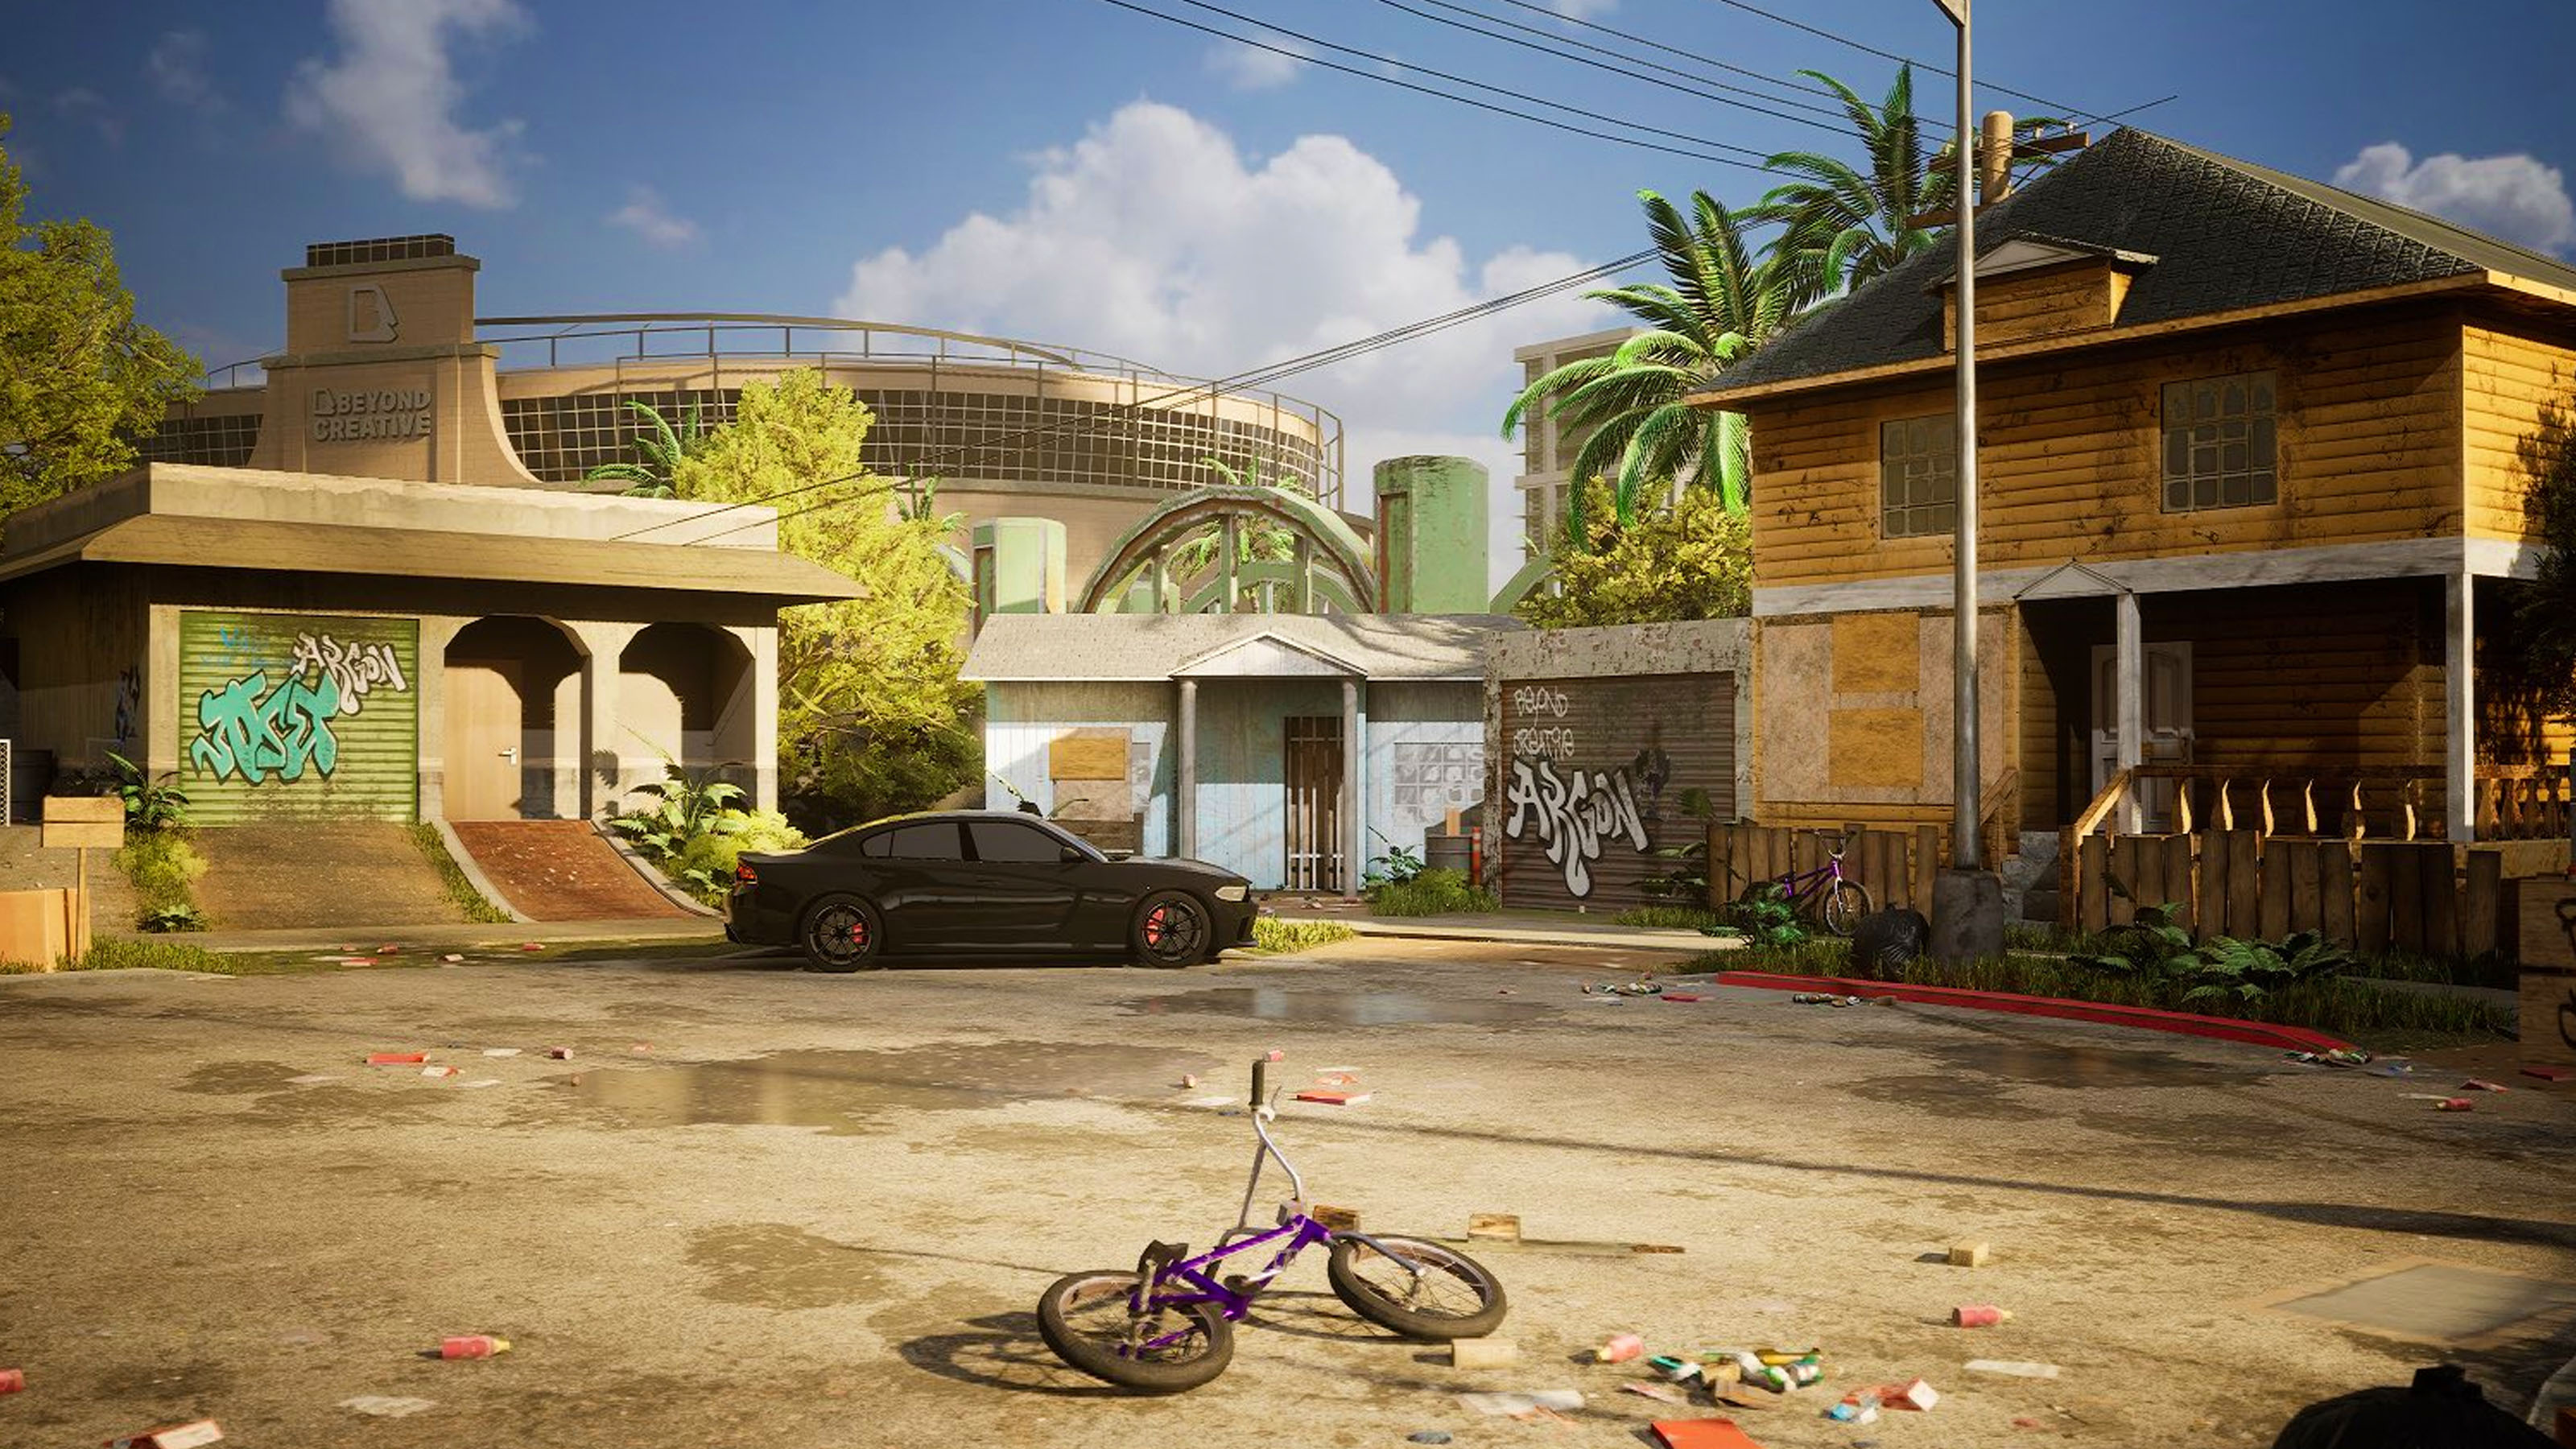 Une Capture D'Écran D'Un Environnement Basé Sur Gta Construit Dans Unreal Engine